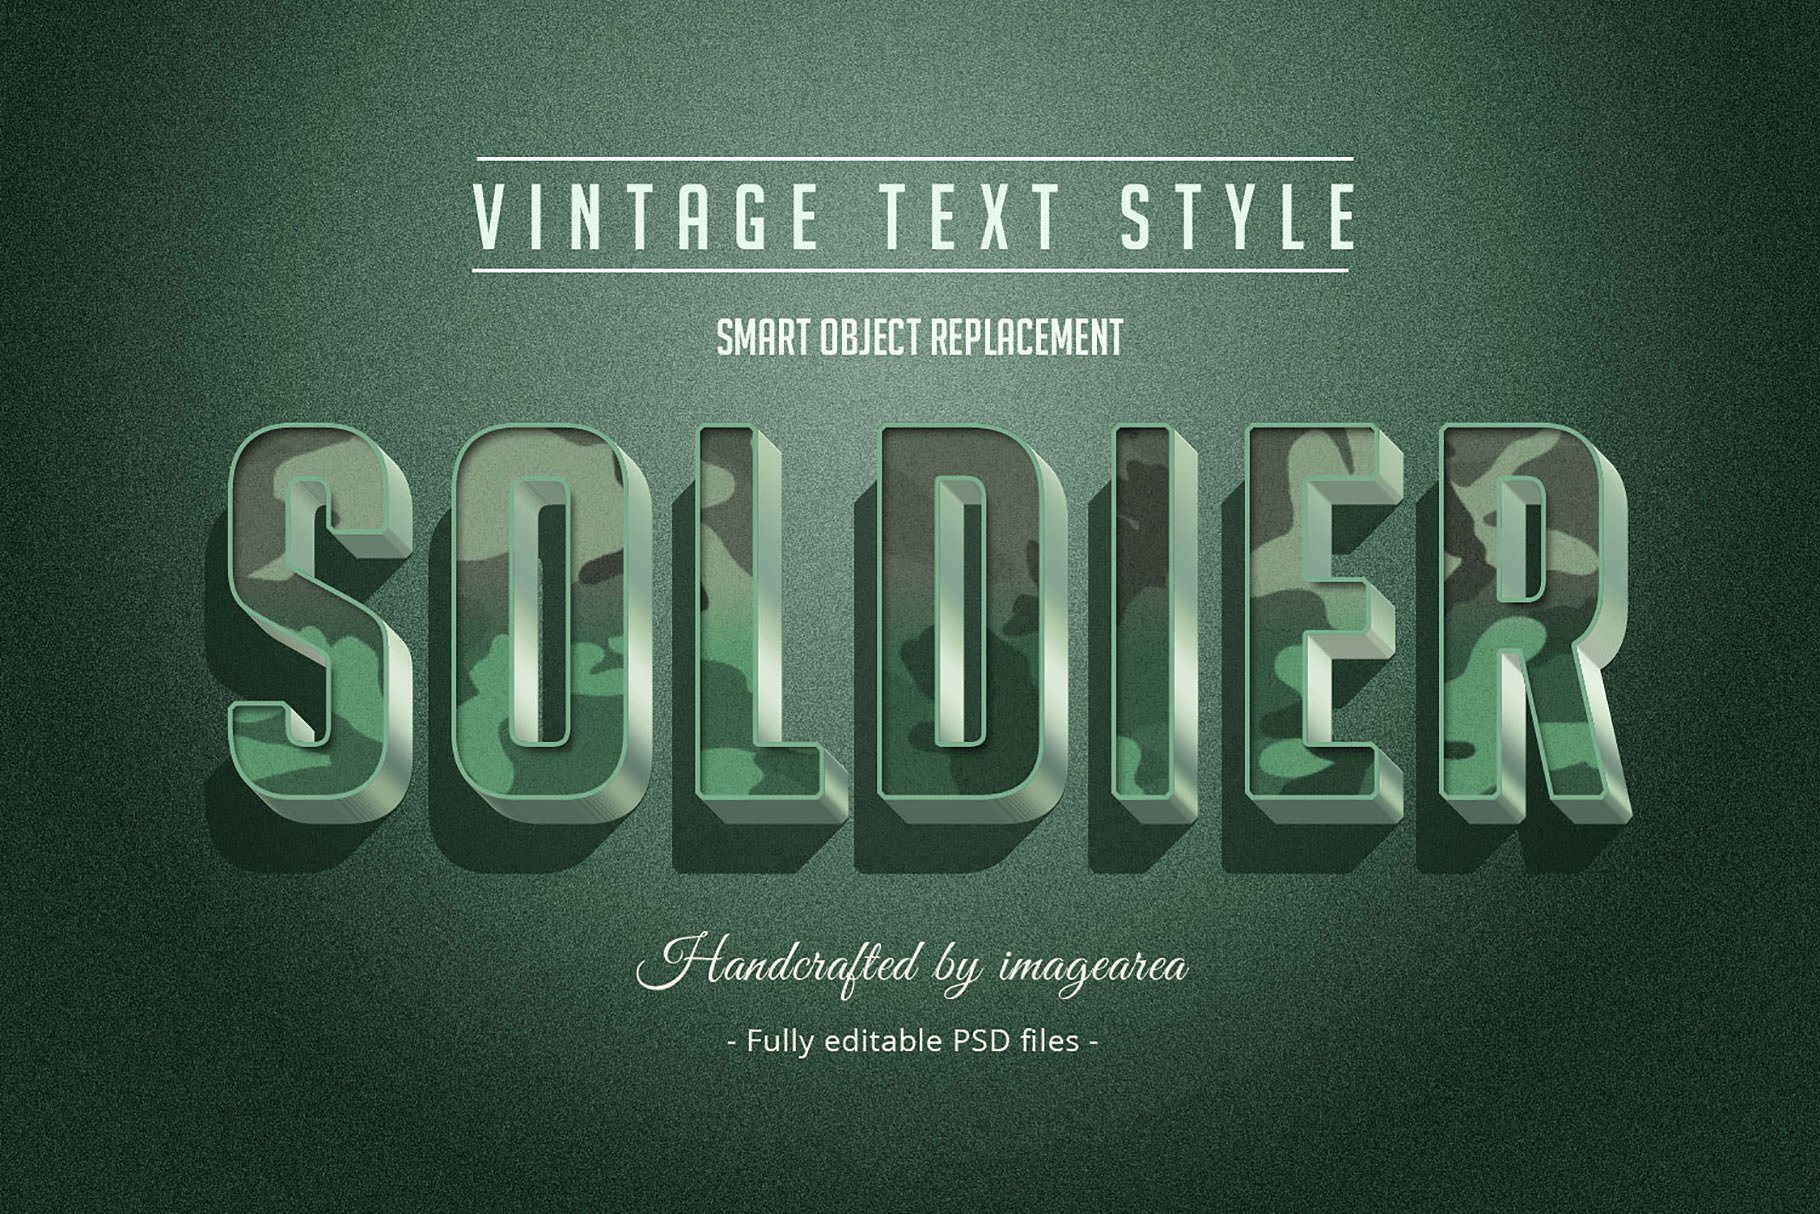 复古条纹风格文本图层样式 Vintage / Retro Text Styles插图4